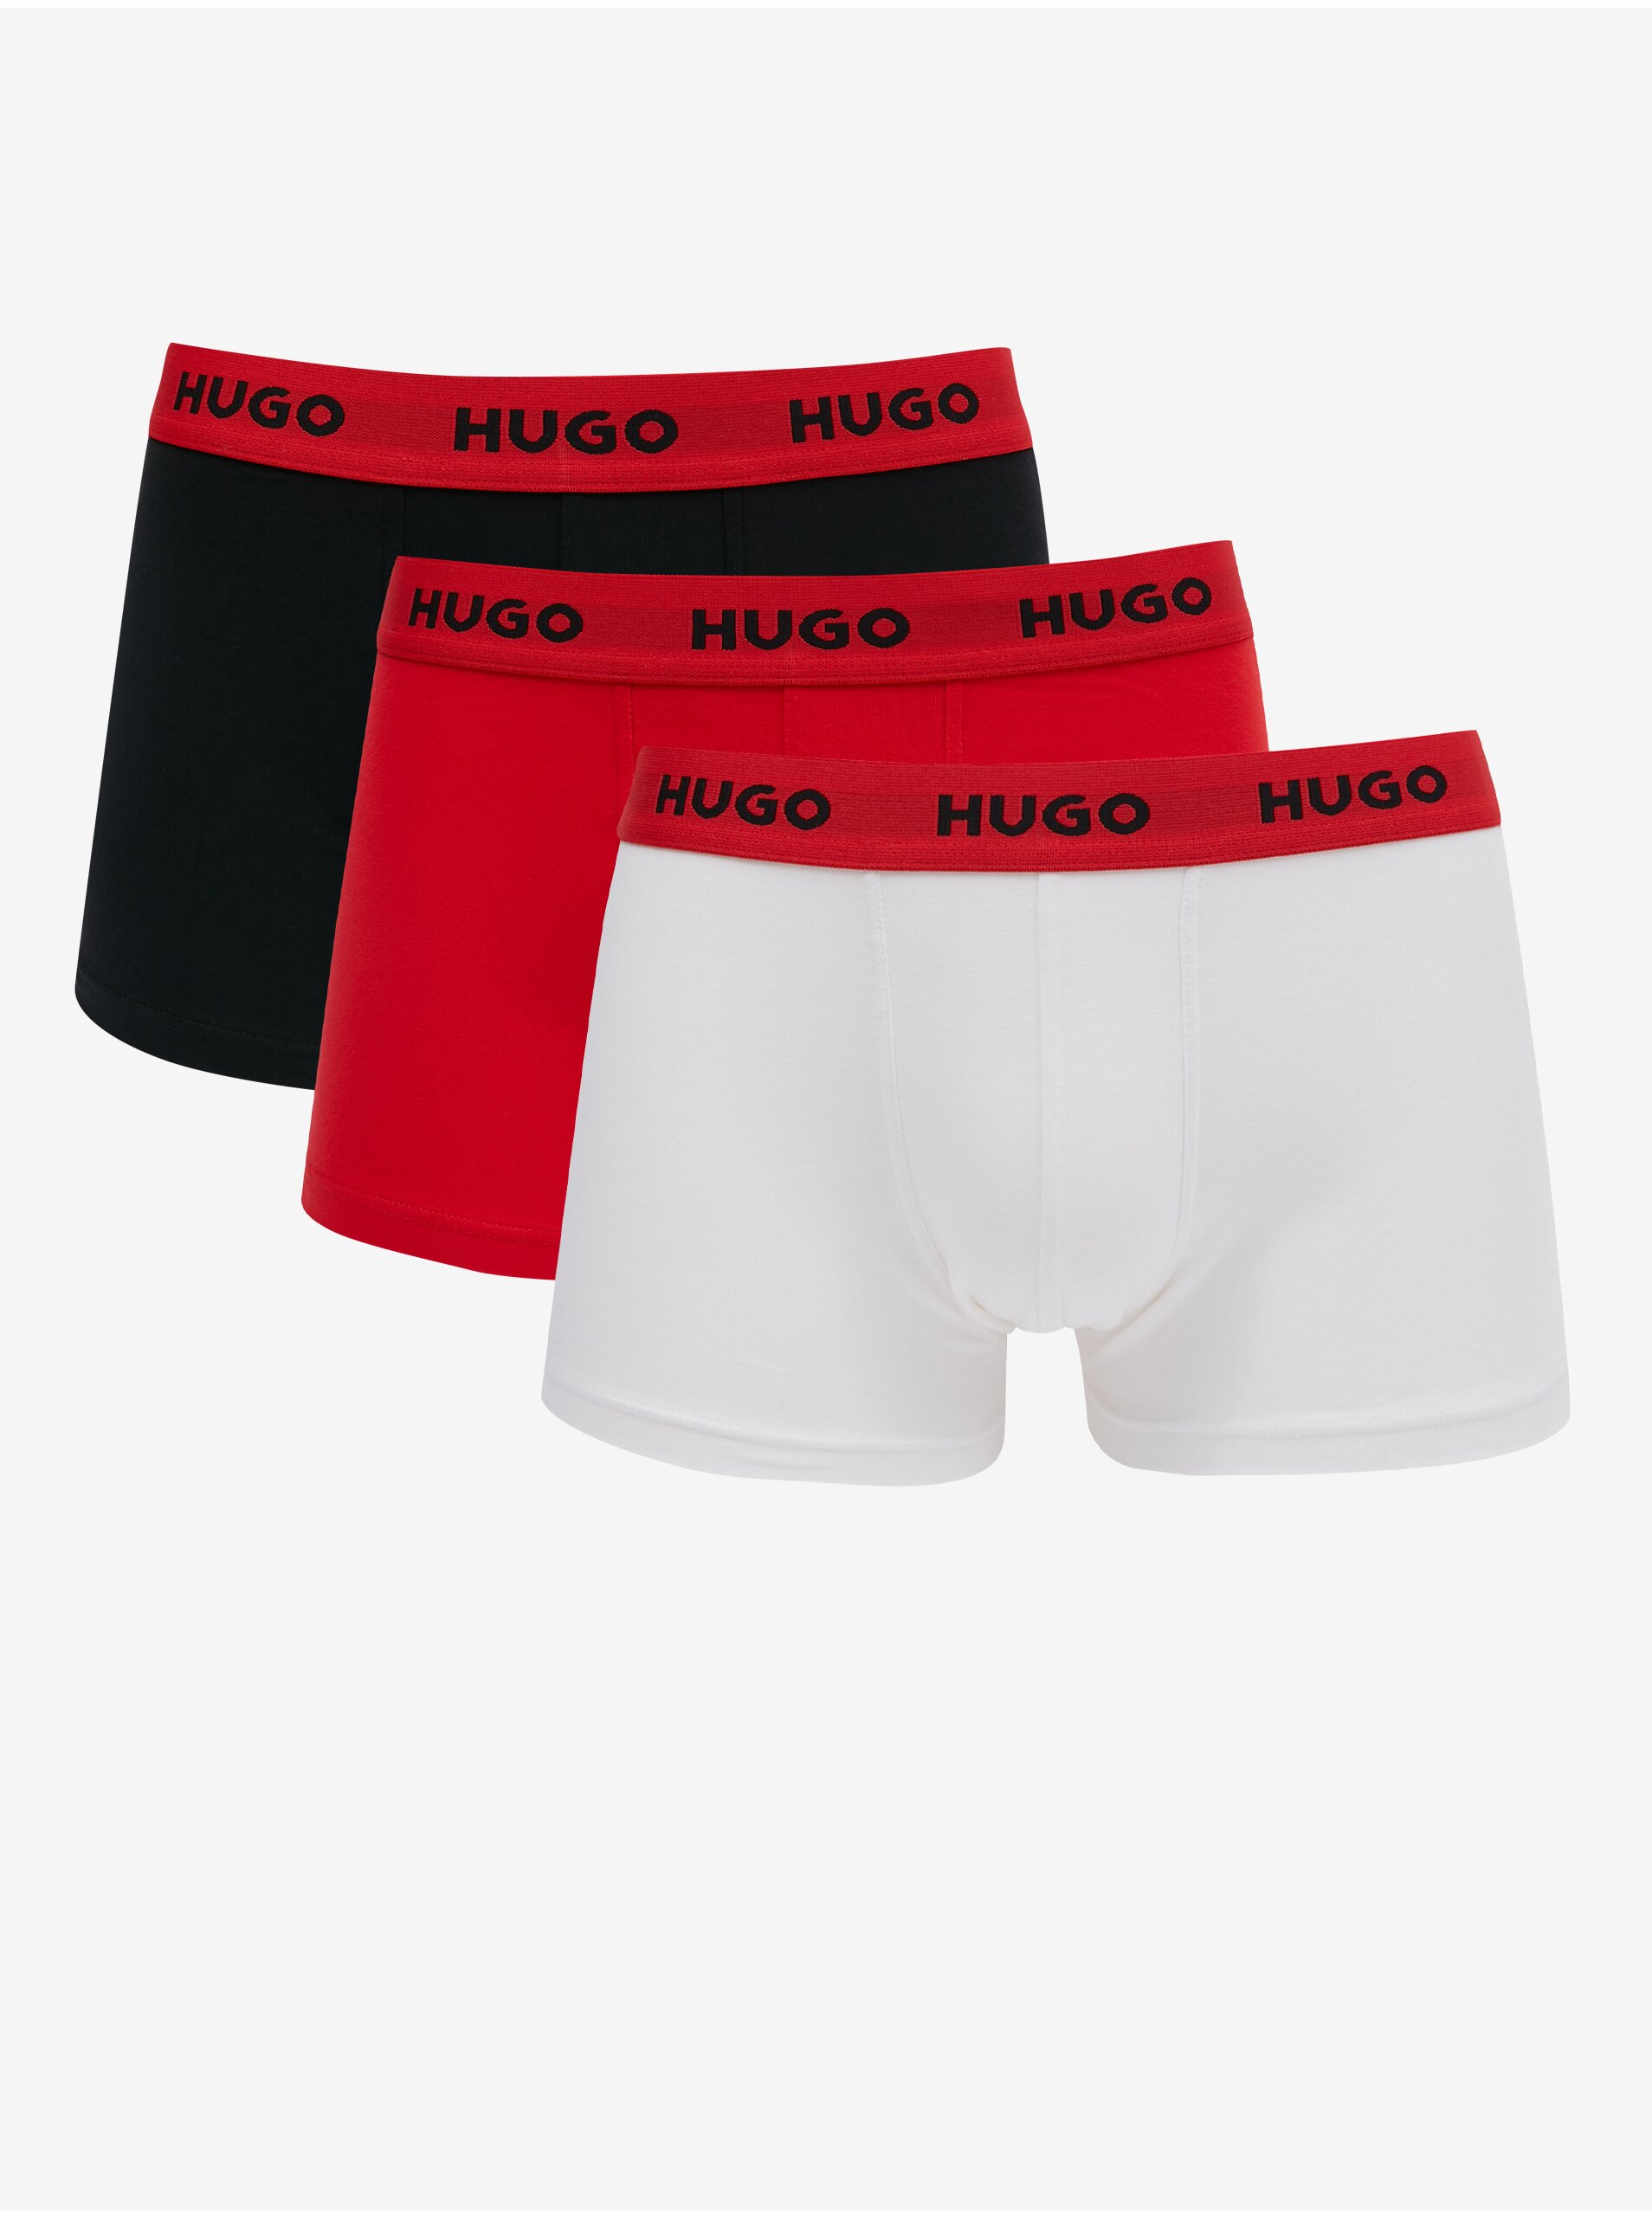 Lacno Súprava troch pánskych boxeriek v čiernej, červenej a bielej farbe HUGO